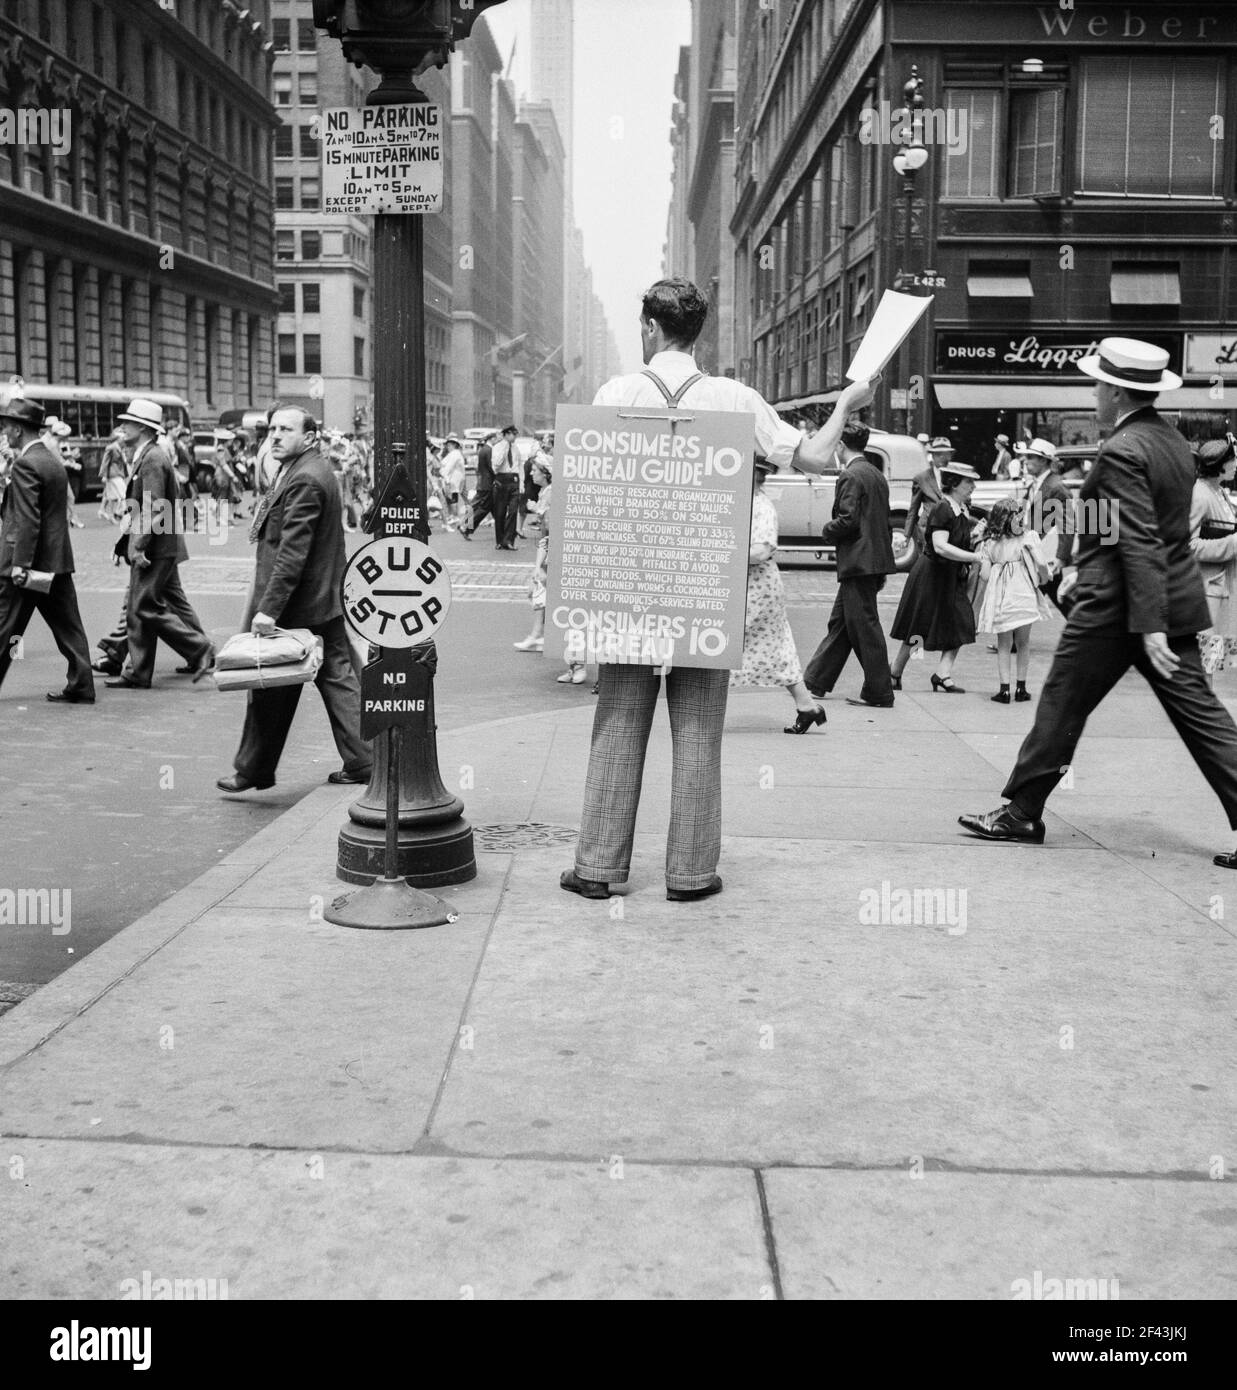 42nd Street et Madison Avenue. Guide du bureau du consommateur de vente de  Street Hawker. New York. Juillet 1939. Photo de Dorothea Lange Photo Stock  - Alamy